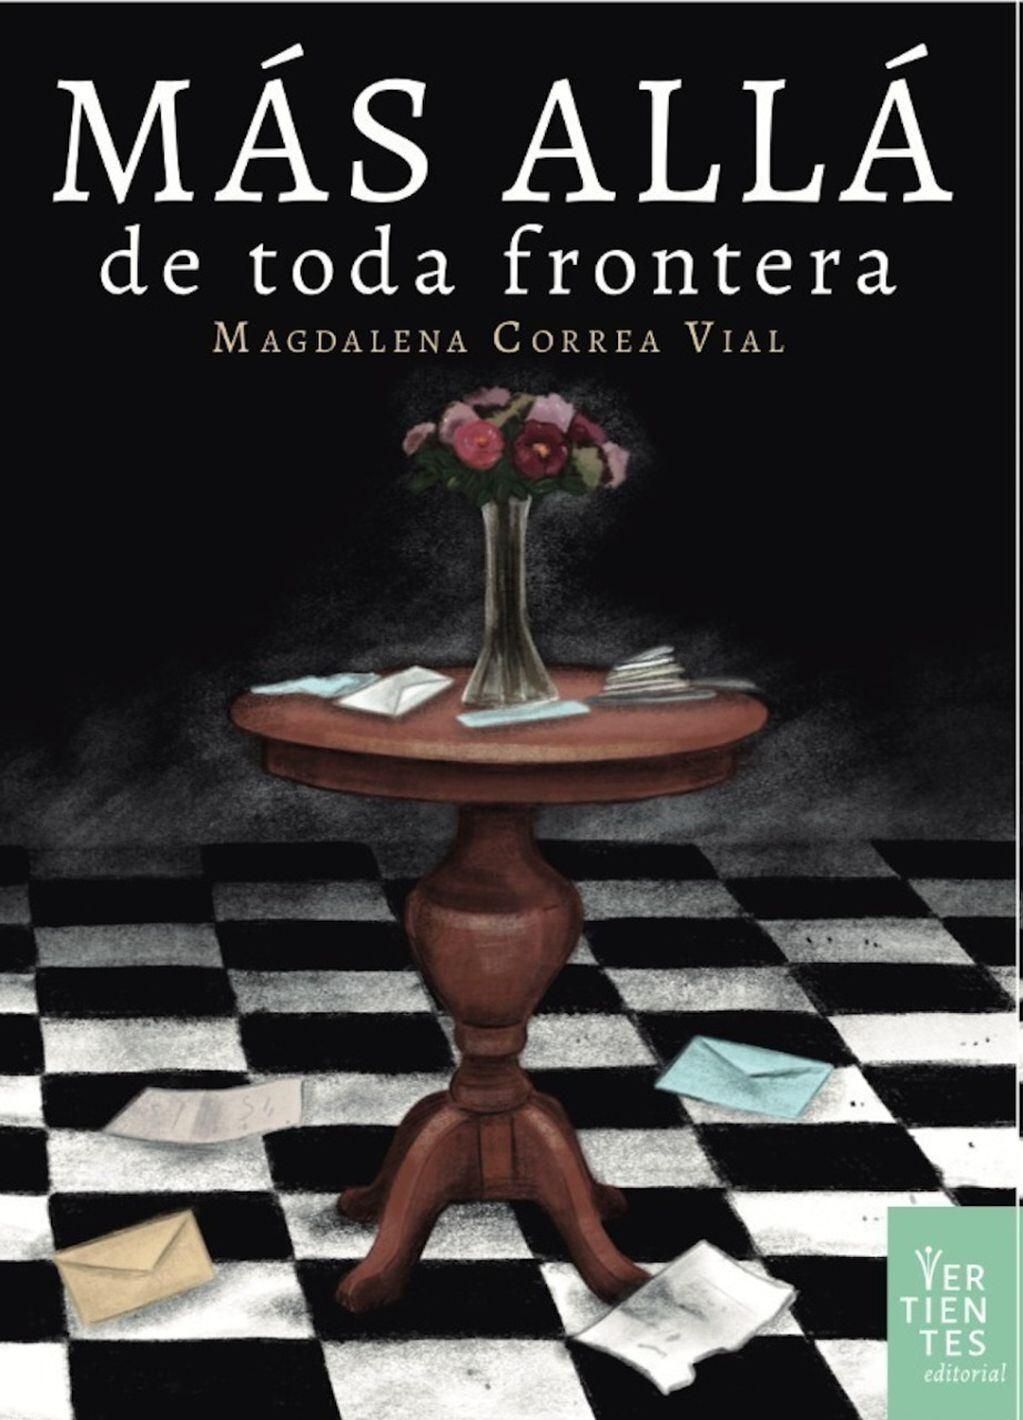 El arte de tapa del libro que presenta Maida Correa Vial.